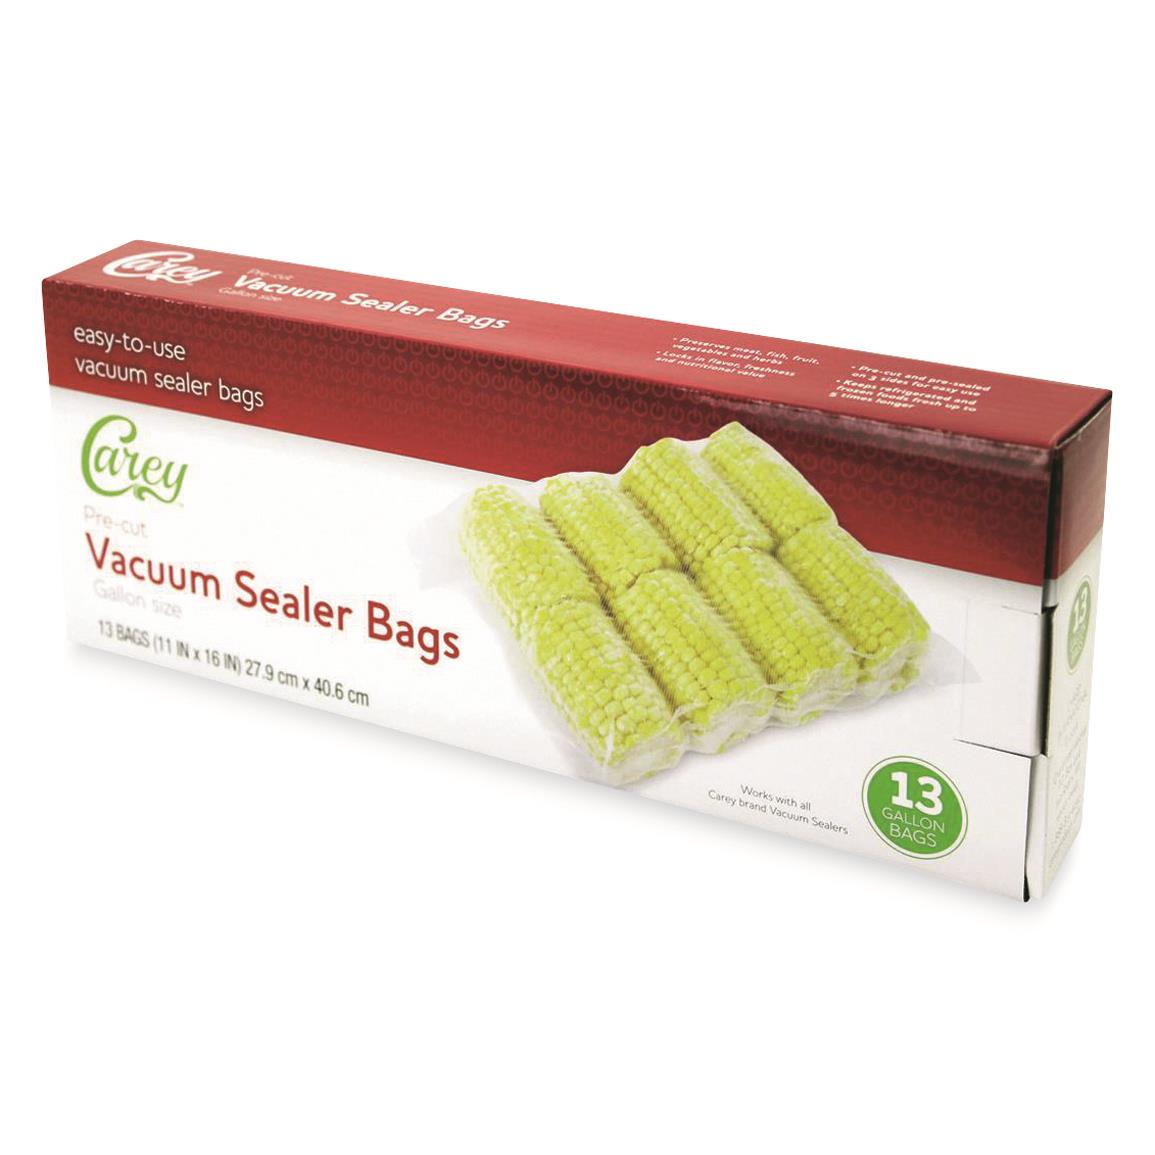 Carey Vacuum Sealer Gallon Bags, 13 Pack